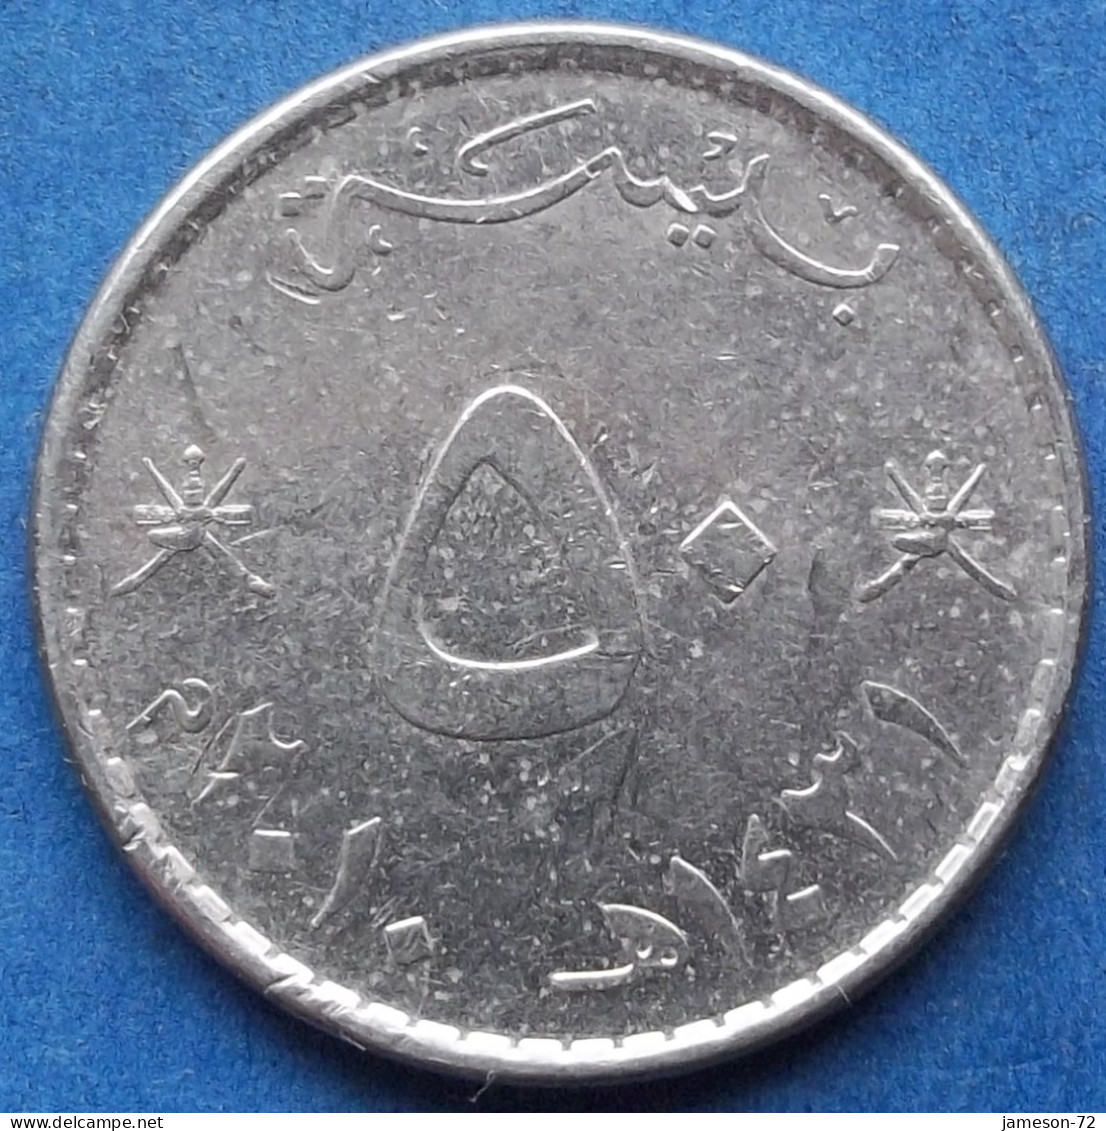 OMAN - 50 Baisa AH1431 2010AD KM# 153a Sultan Quabus Bin Sa'id Reform Coinage (1972) - Edelweiss Coins - Oman